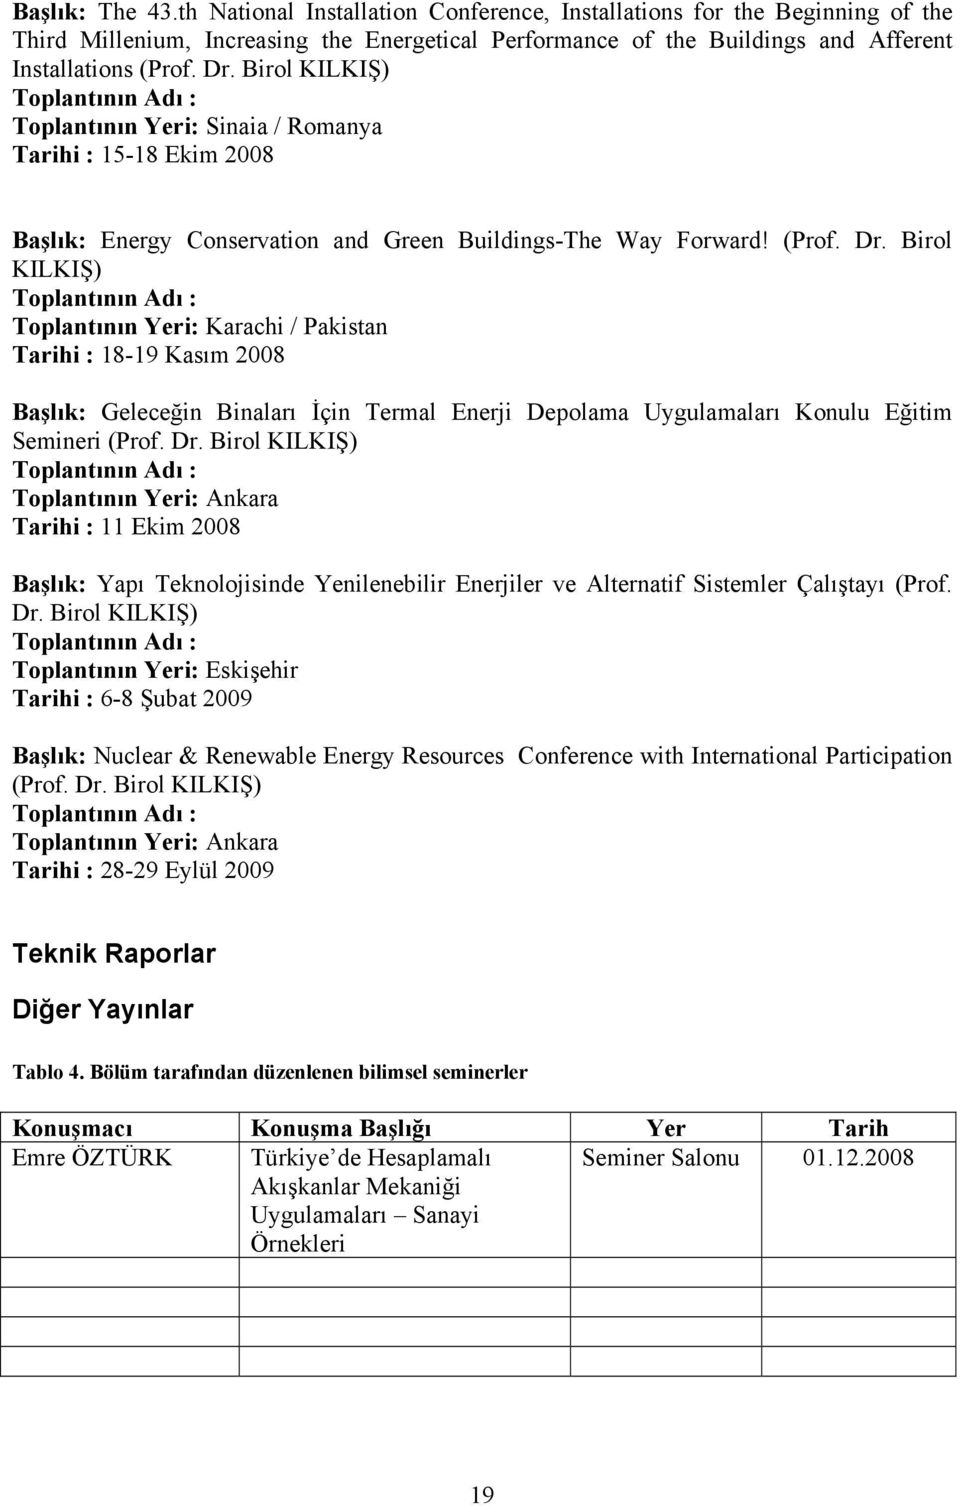 Birol KILKIŞ) Toplantının Adı : Toplantının Yeri: Karachi / Pakistan Tarihi : 18-19 Kasım 2008 Başlık: Geleceğin Binaları İçin Termal Enerji Depolama Uygulamaları Konulu Eğitim Semineri (Prof. Dr.